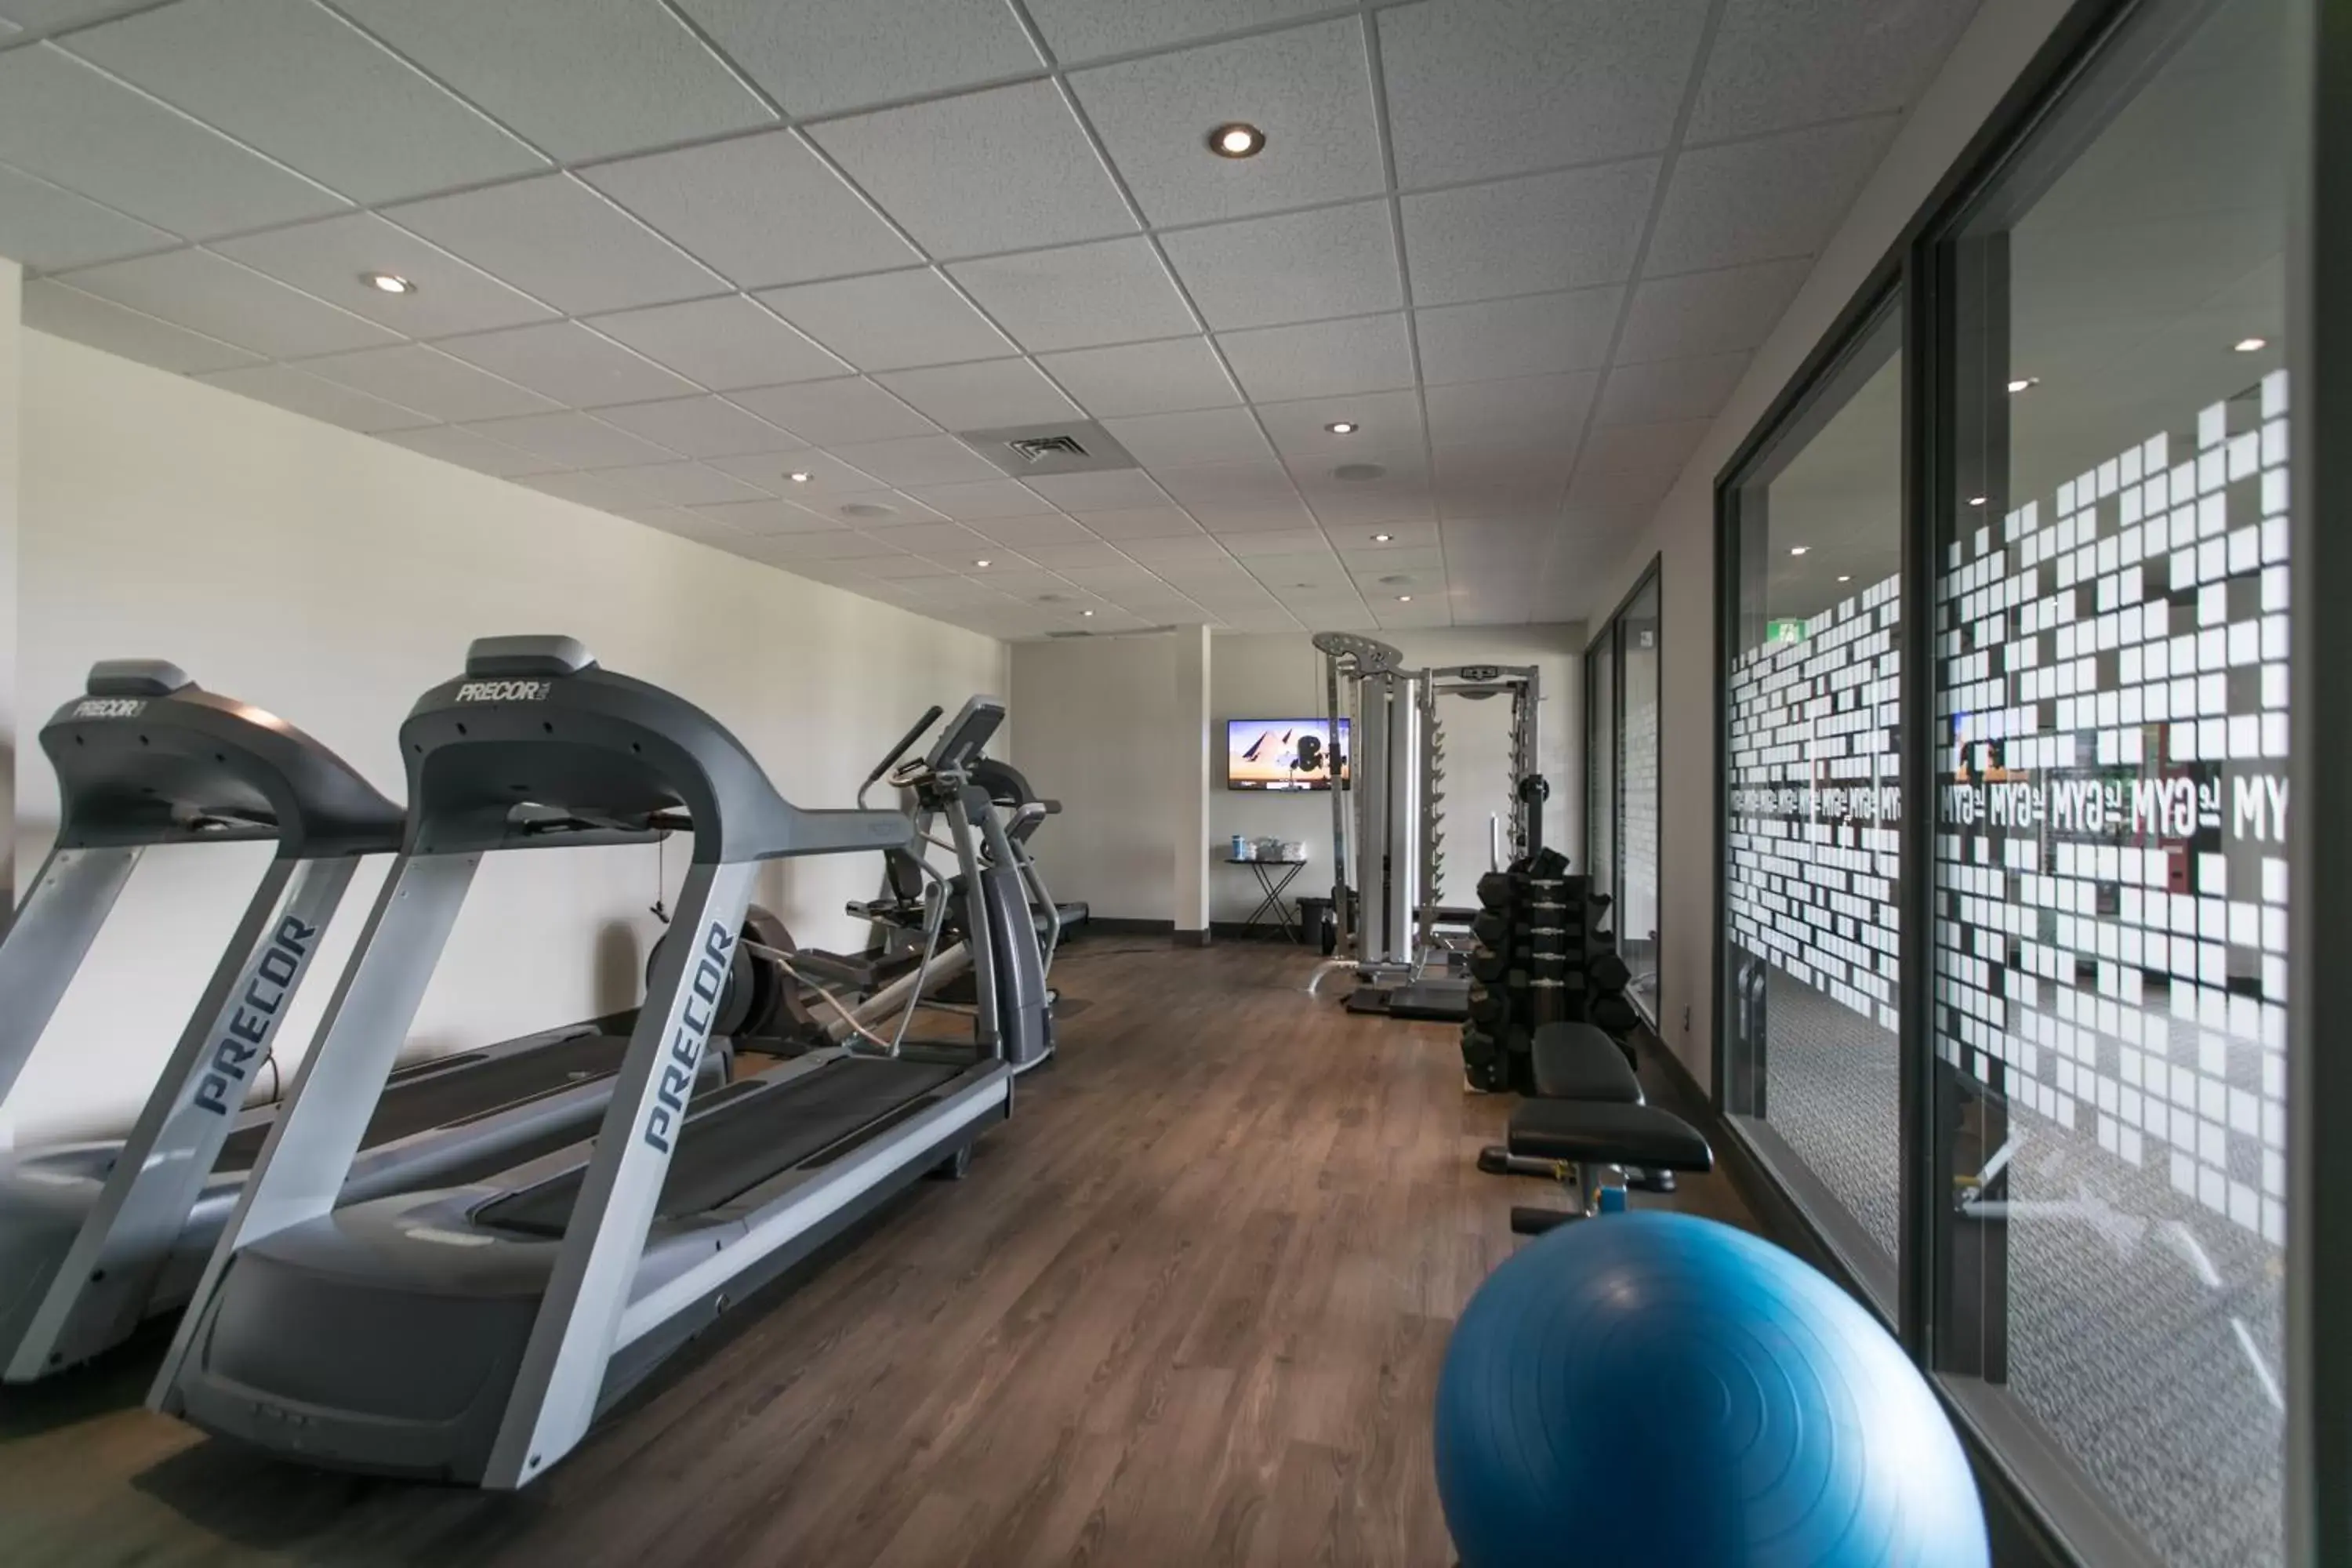 Area and facilities, Fitness Center/Facilities in Hôtel du Domaine, centre de villégiature et de congrès